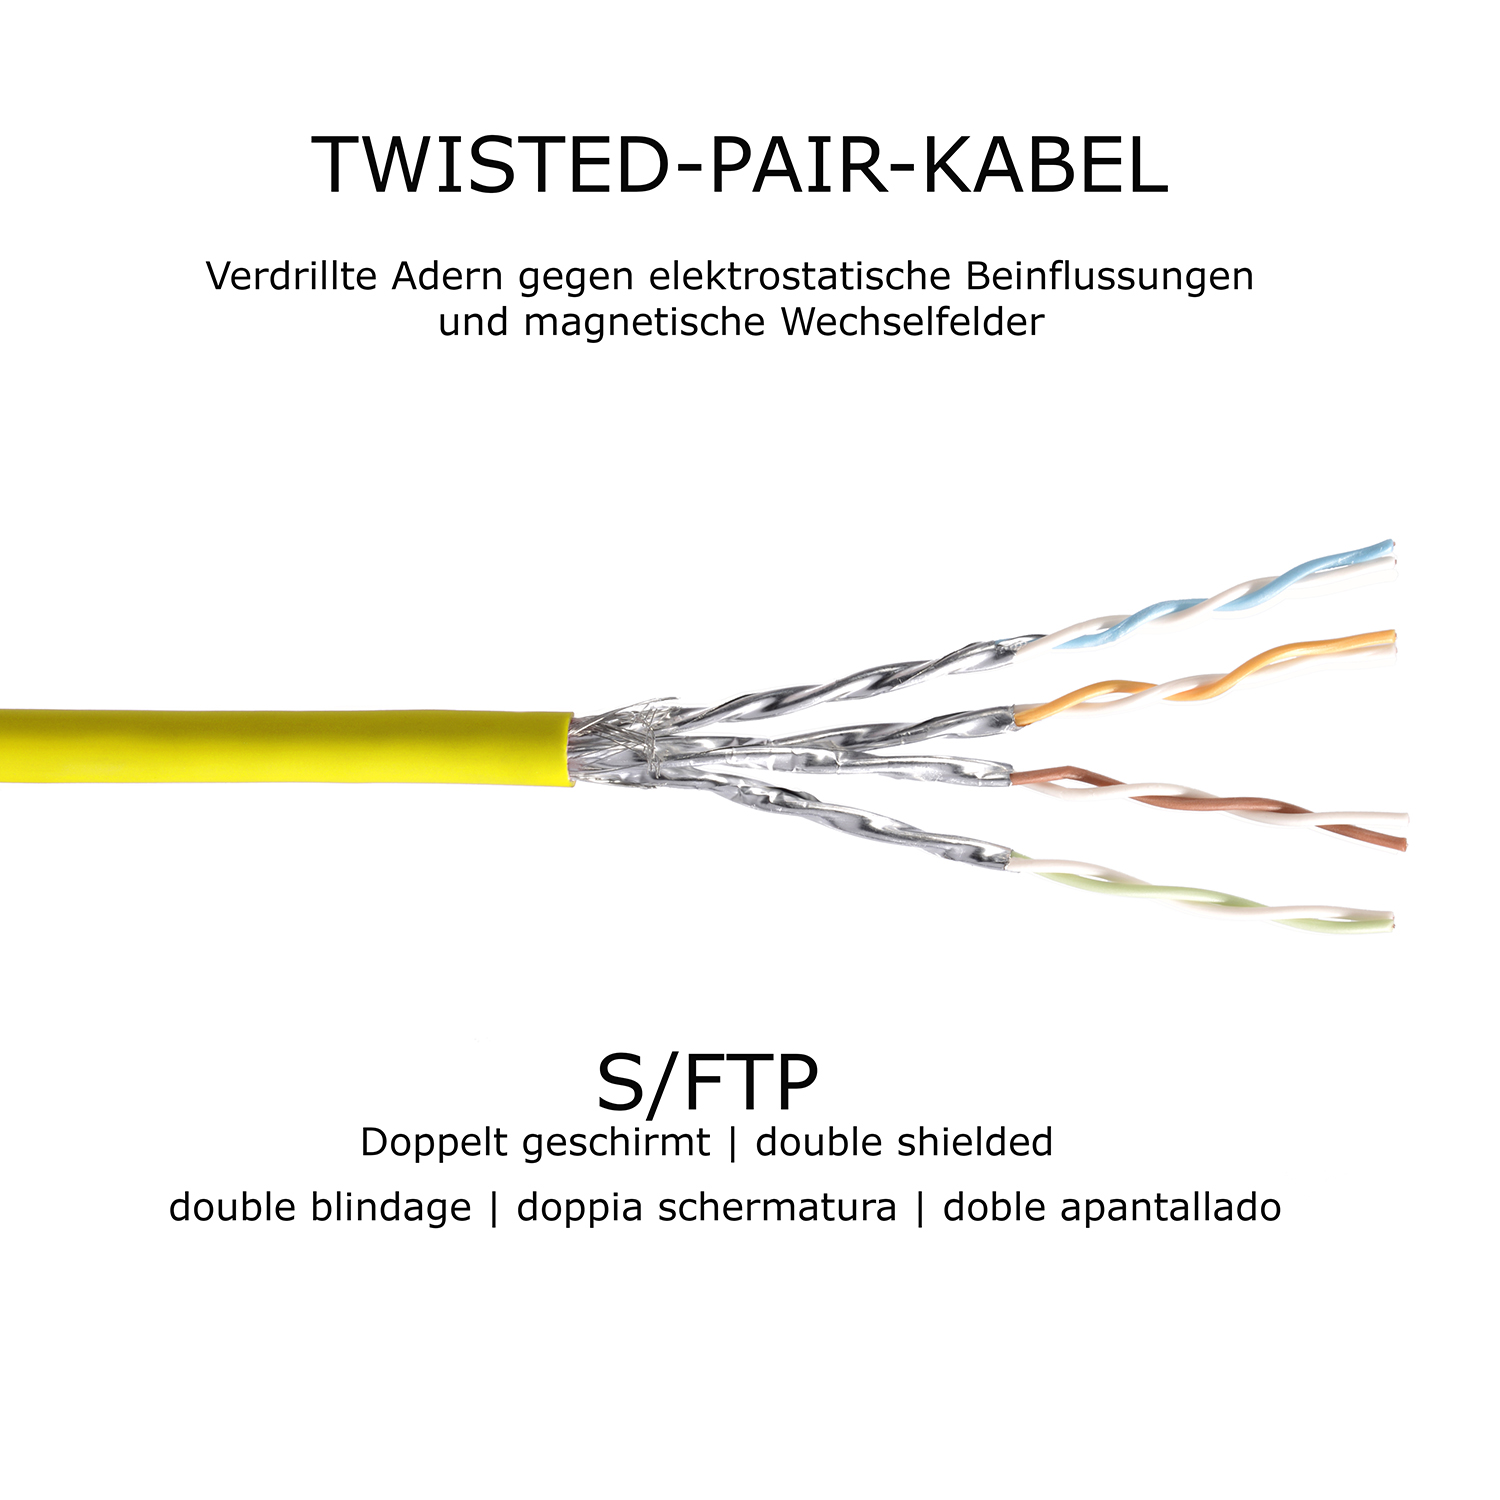 TPFNET 5er 1000Mbit, 0,50m gelb, Patchkabel Pack 0,5 S/FTP m / Netzwerkkabel Netzwerkkabel